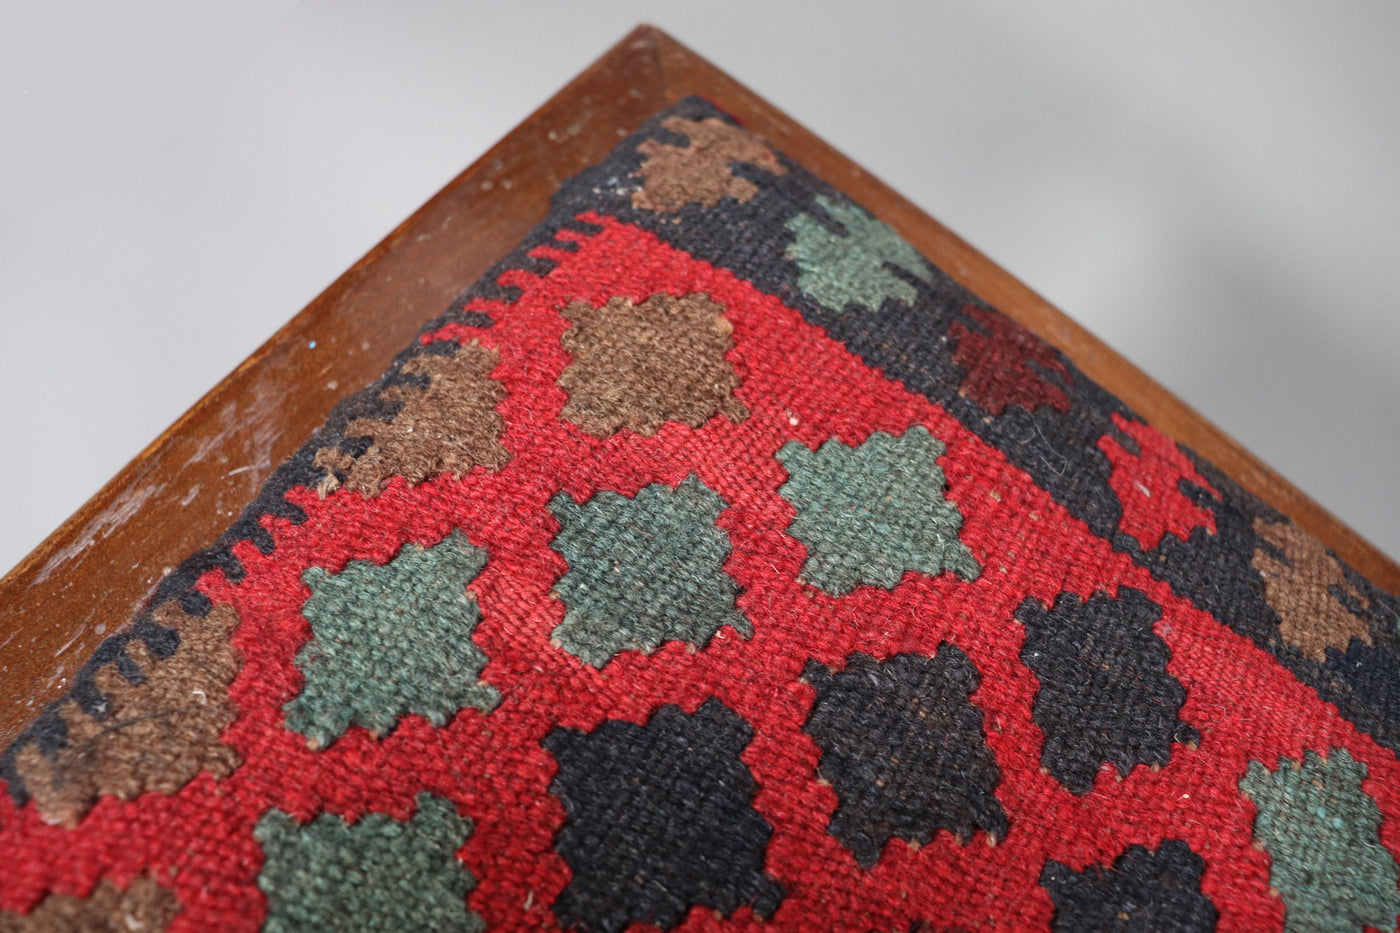 Antik orient islamische Stuhl  Bank Hocker aus Walnussholz  Damaskus Syrien maurische Kunst bezug aus und Afghan kelim Teppich  Orientsbazar   